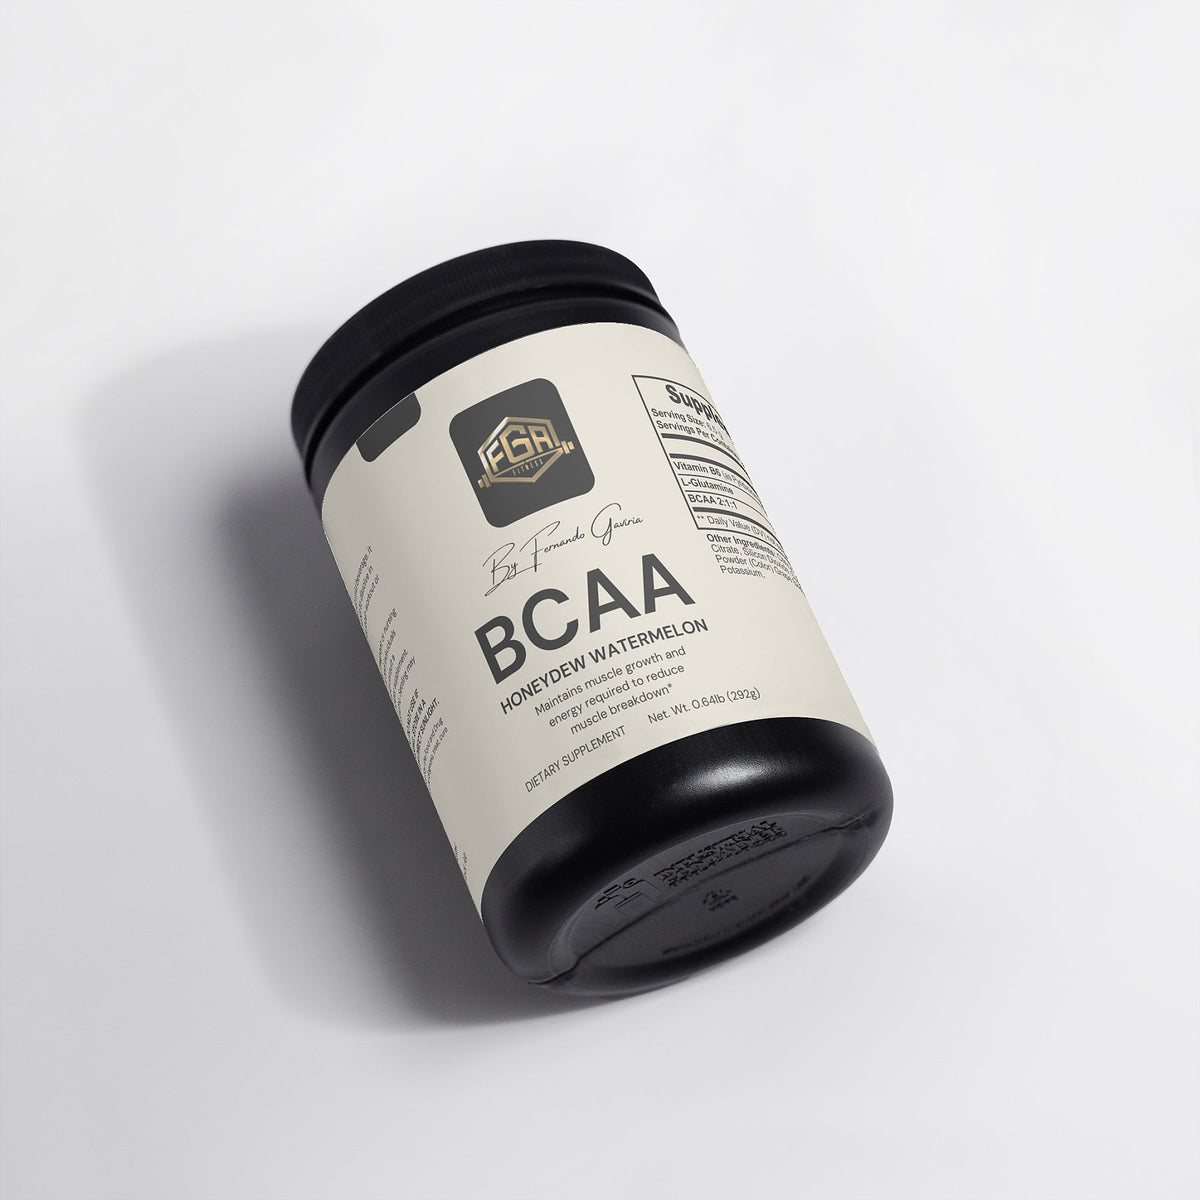 BCAA Post Workout Powder (Melón/Sandía)